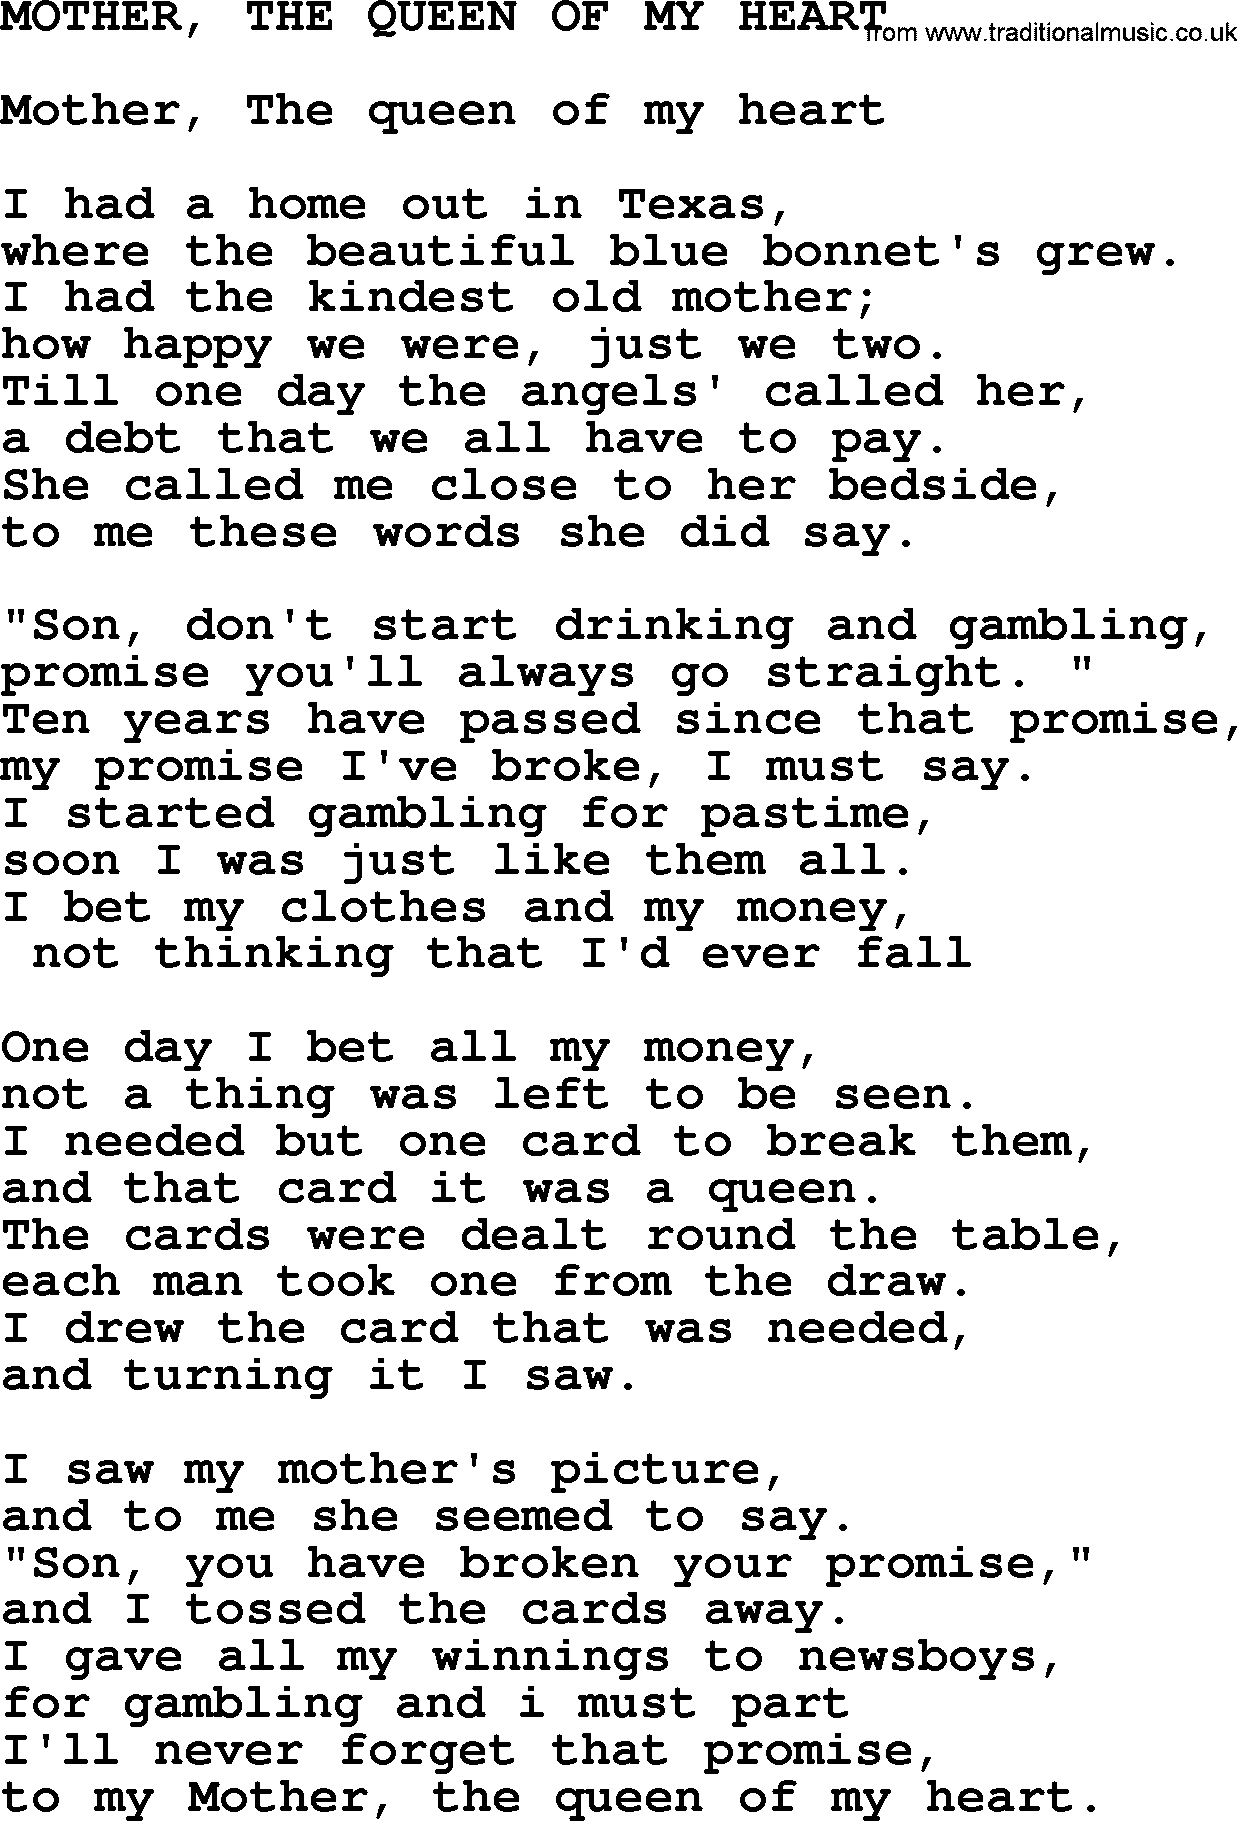 Merle Haggard song: Mother, The Queen Of My Heart, lyrics.